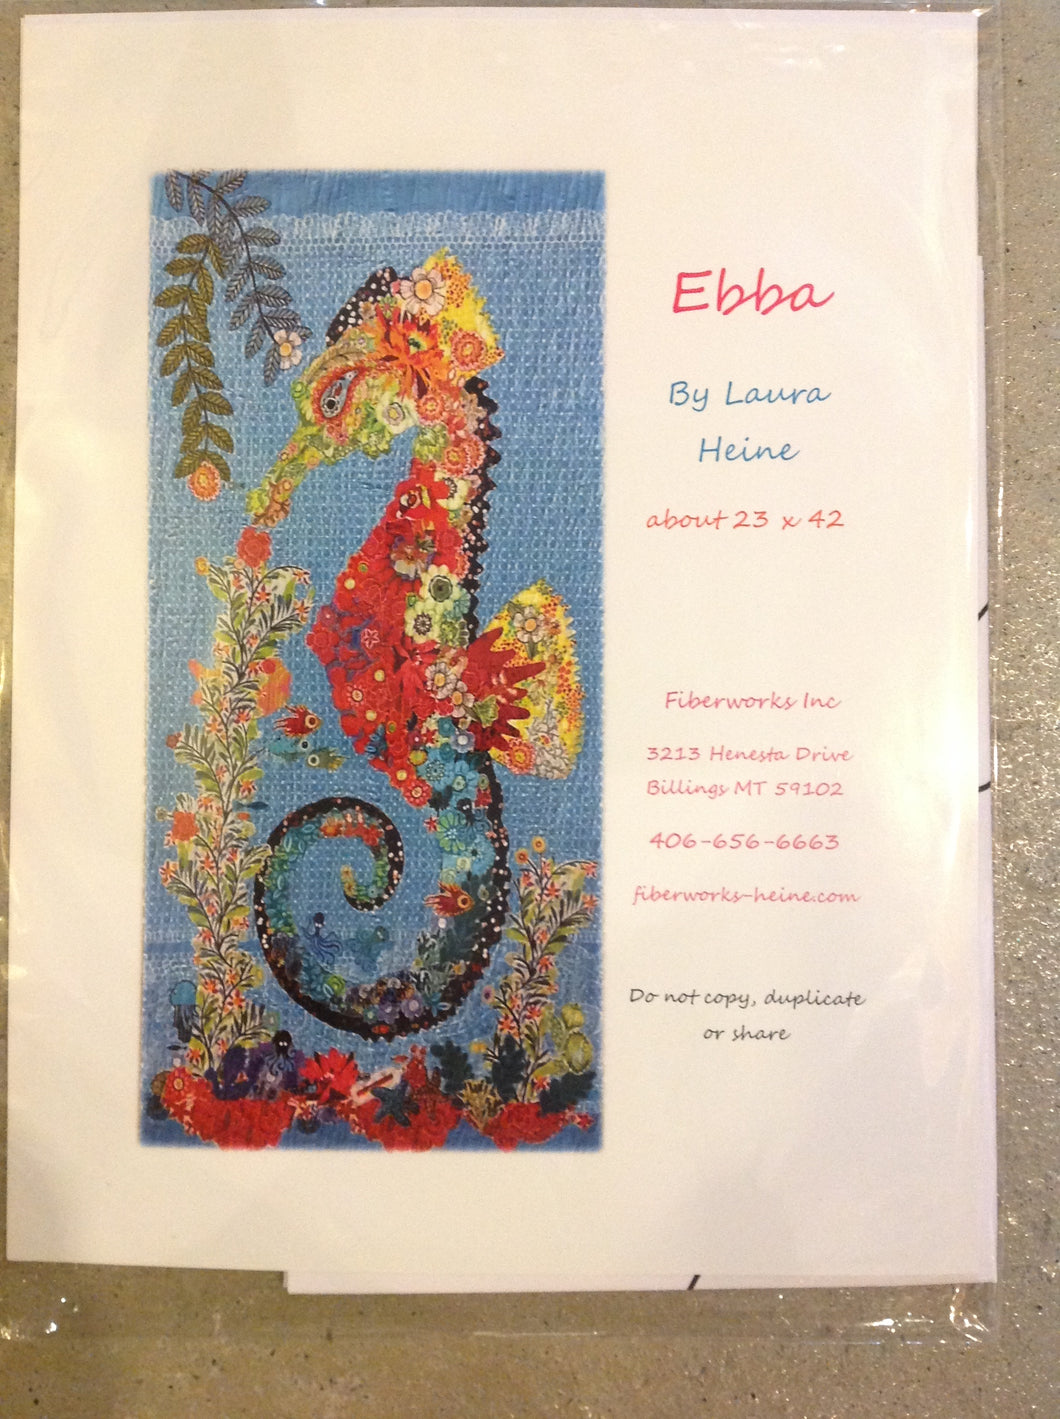 Ebba by Laura Heine